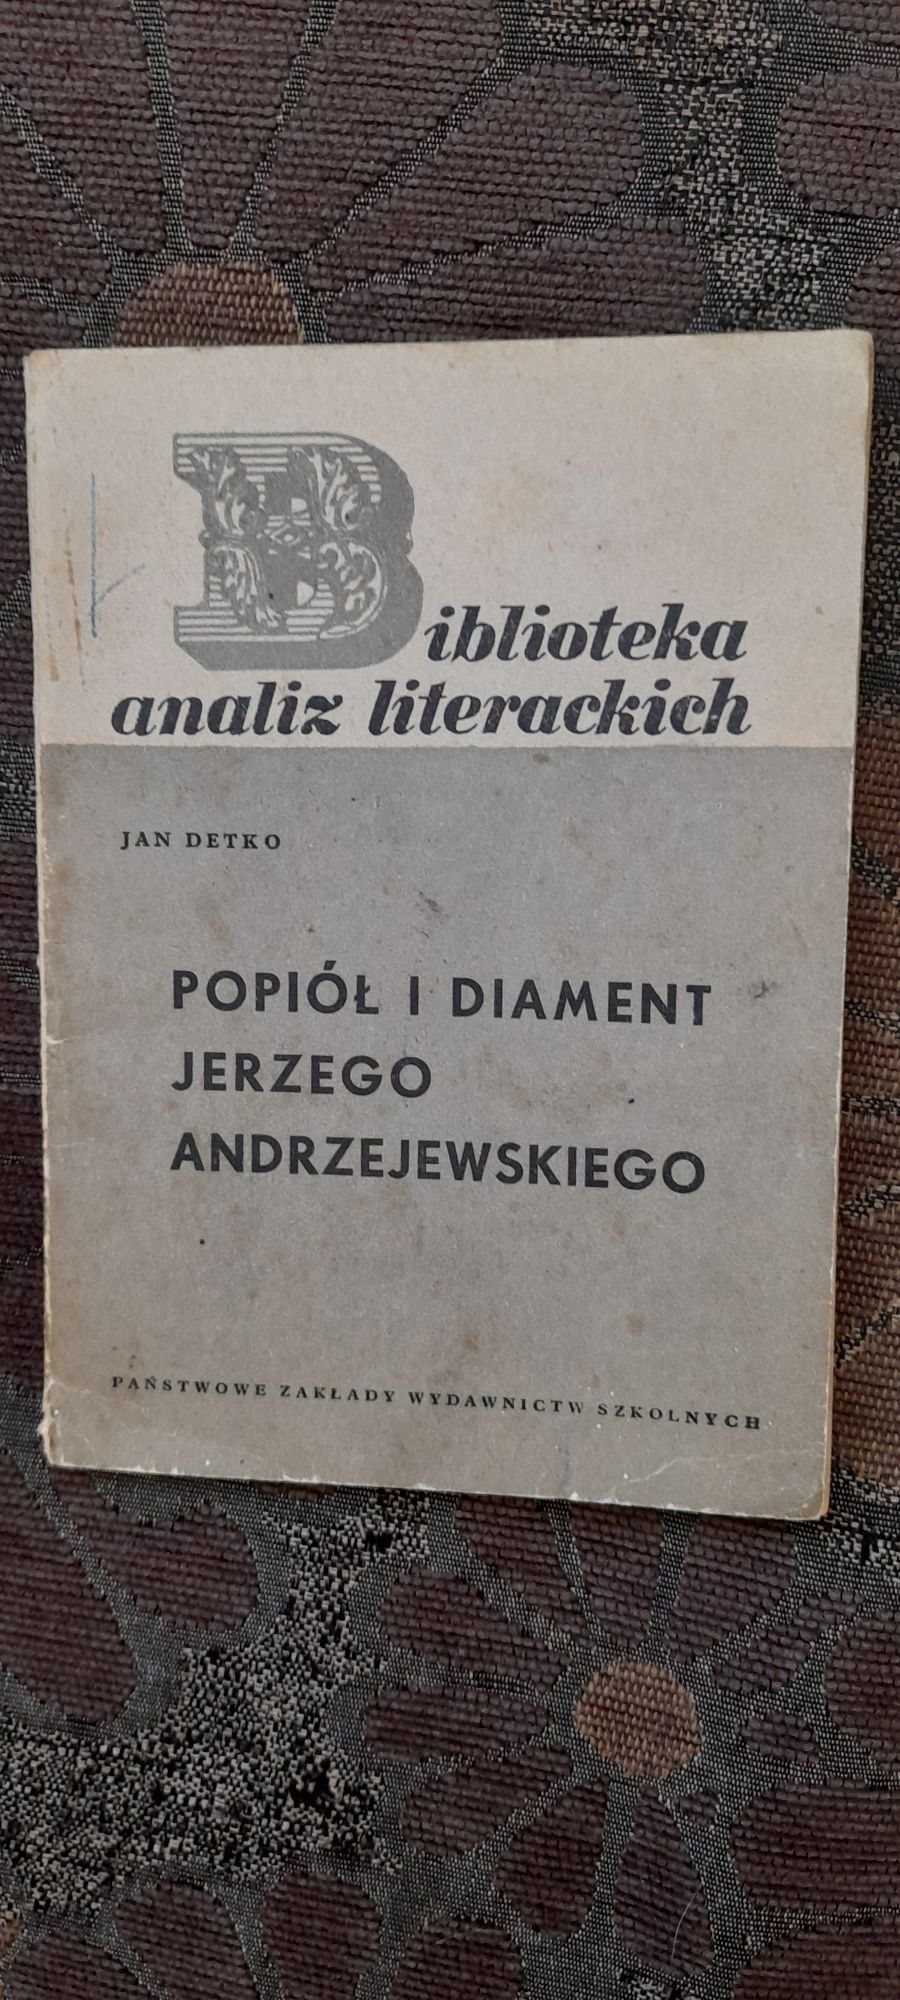 Analiza literacka- Popiół i diament J. Andrzejewskiego - Jan Detko wyd